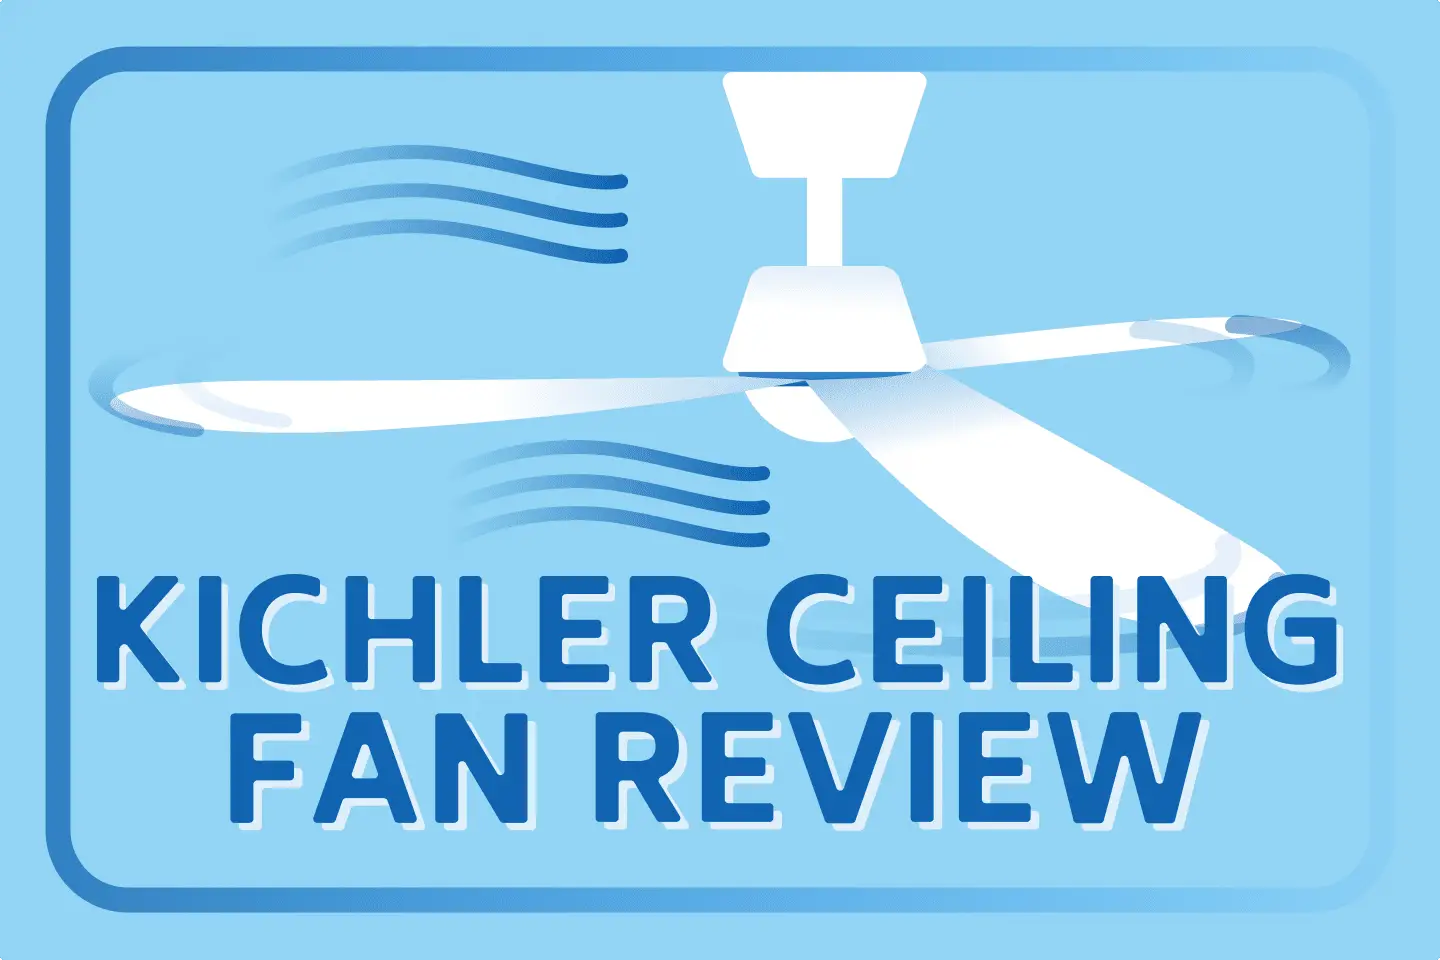 Best Kichler Ceiling Fans